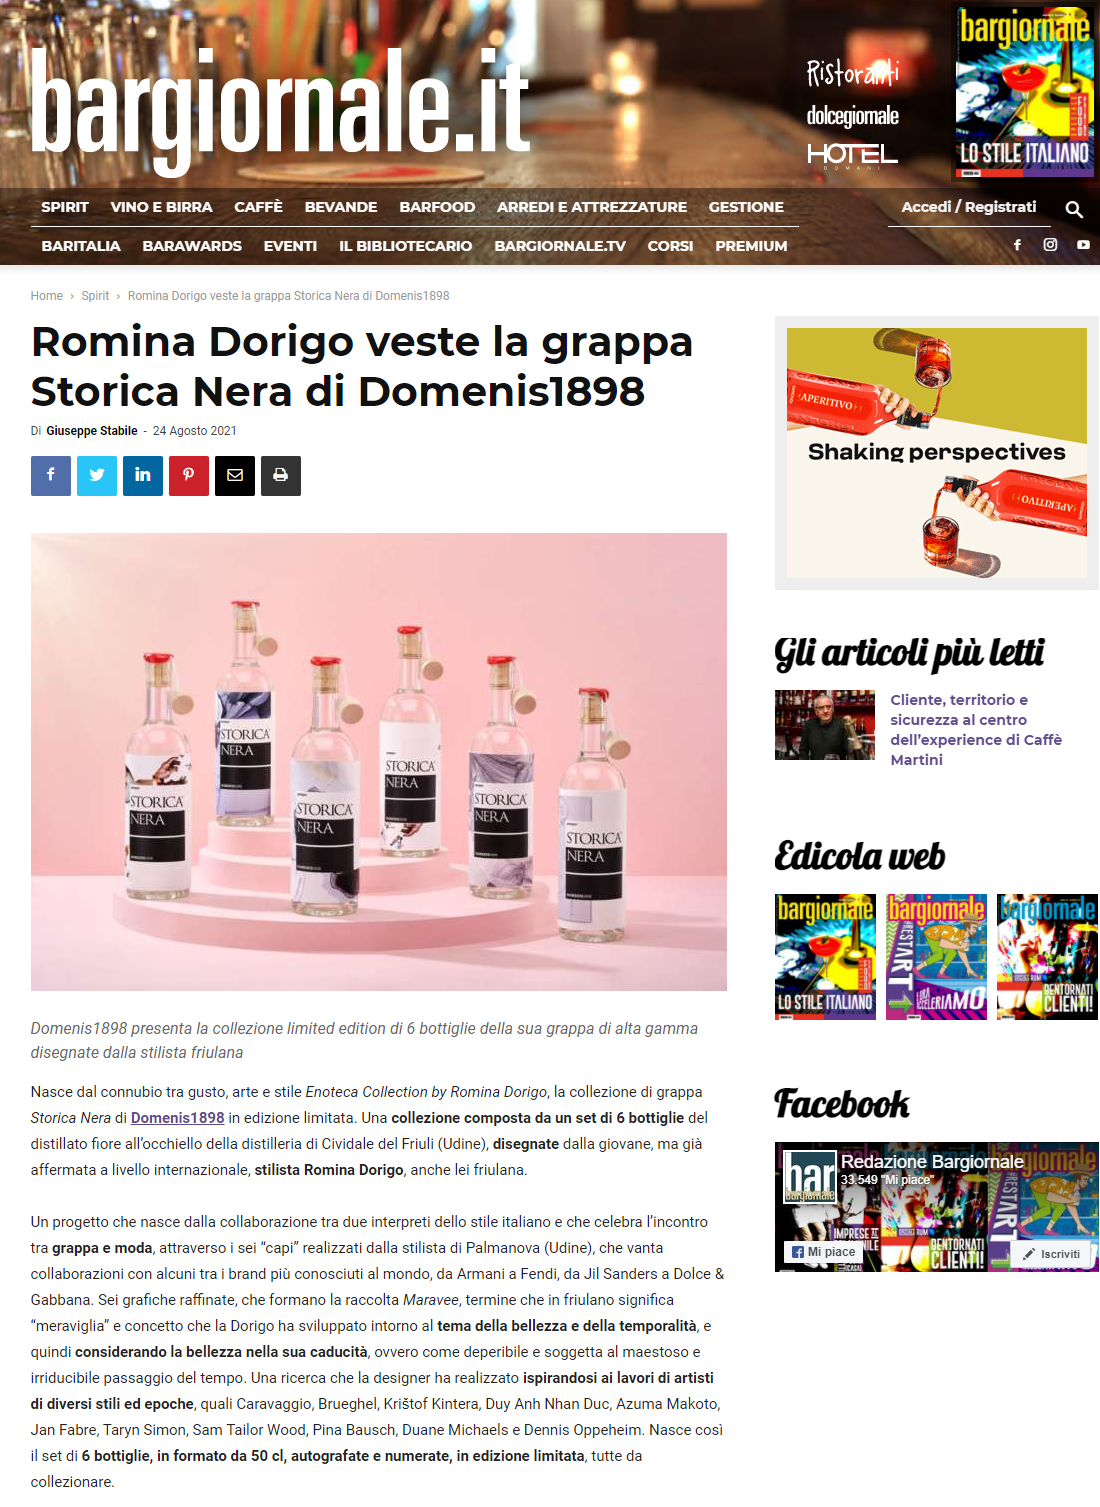 2021 agosto 24: Bargiornale.it – Romina Dorigo veste la grappa Storica Nera di DOMENIS1898